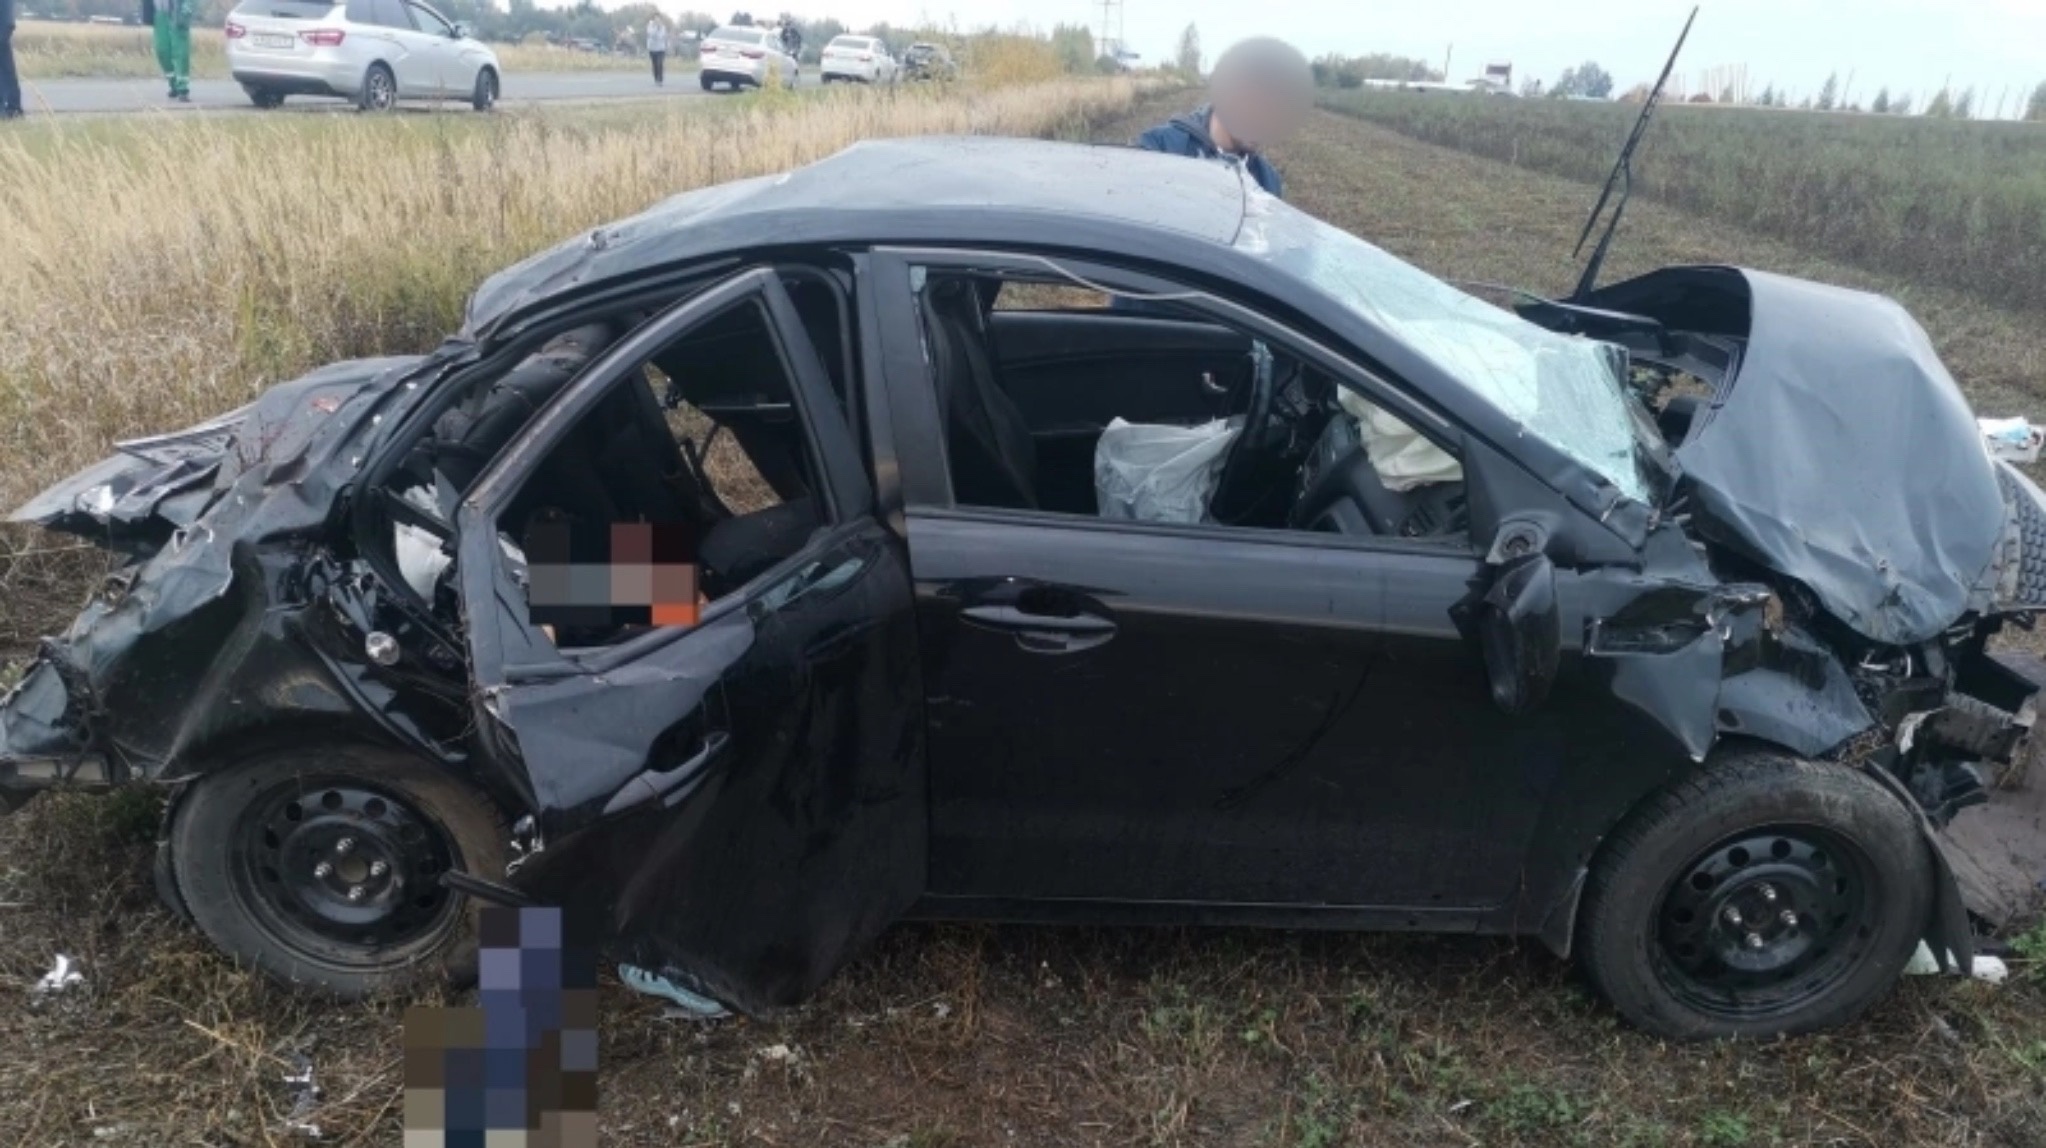 Водитель из Цивильского района погубил троих пассажиров и пытался свалить вину на 23-летнего парня